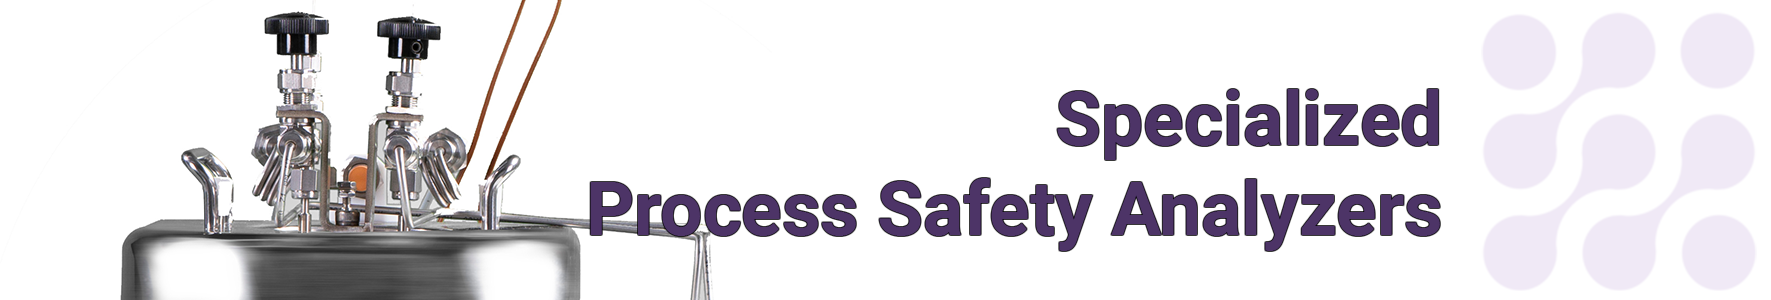 Specialized Process Safety Analyzers